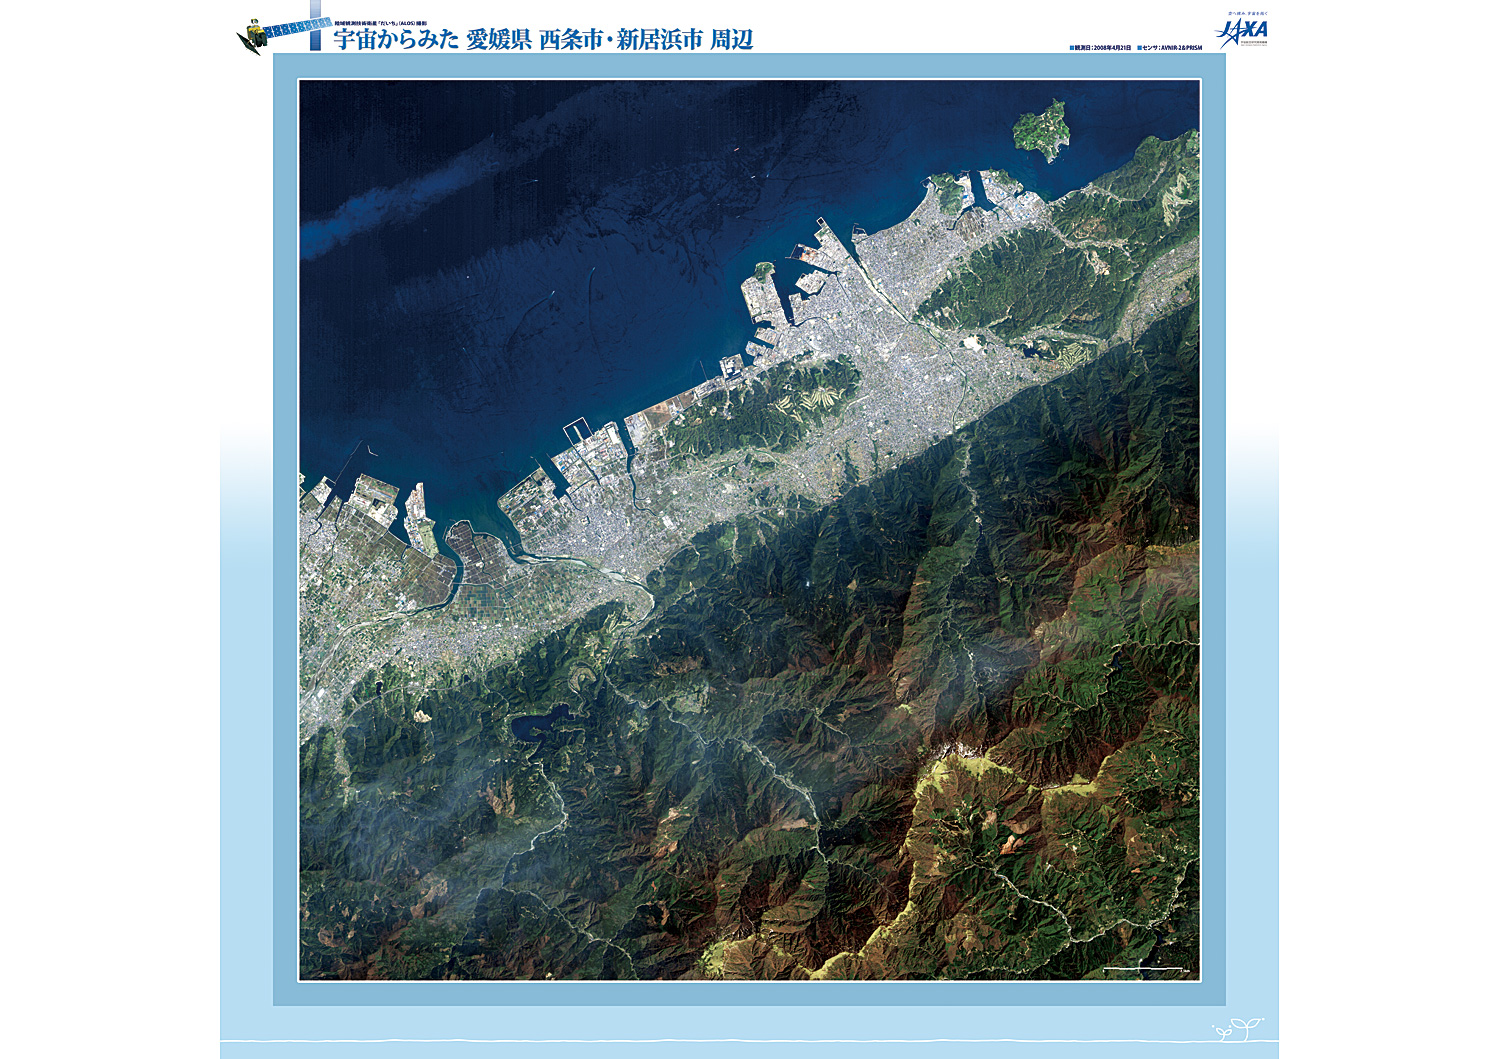 だいちから見た日本の都市 西条市・新居浜市:衛星画像（ポスター仕上げ）